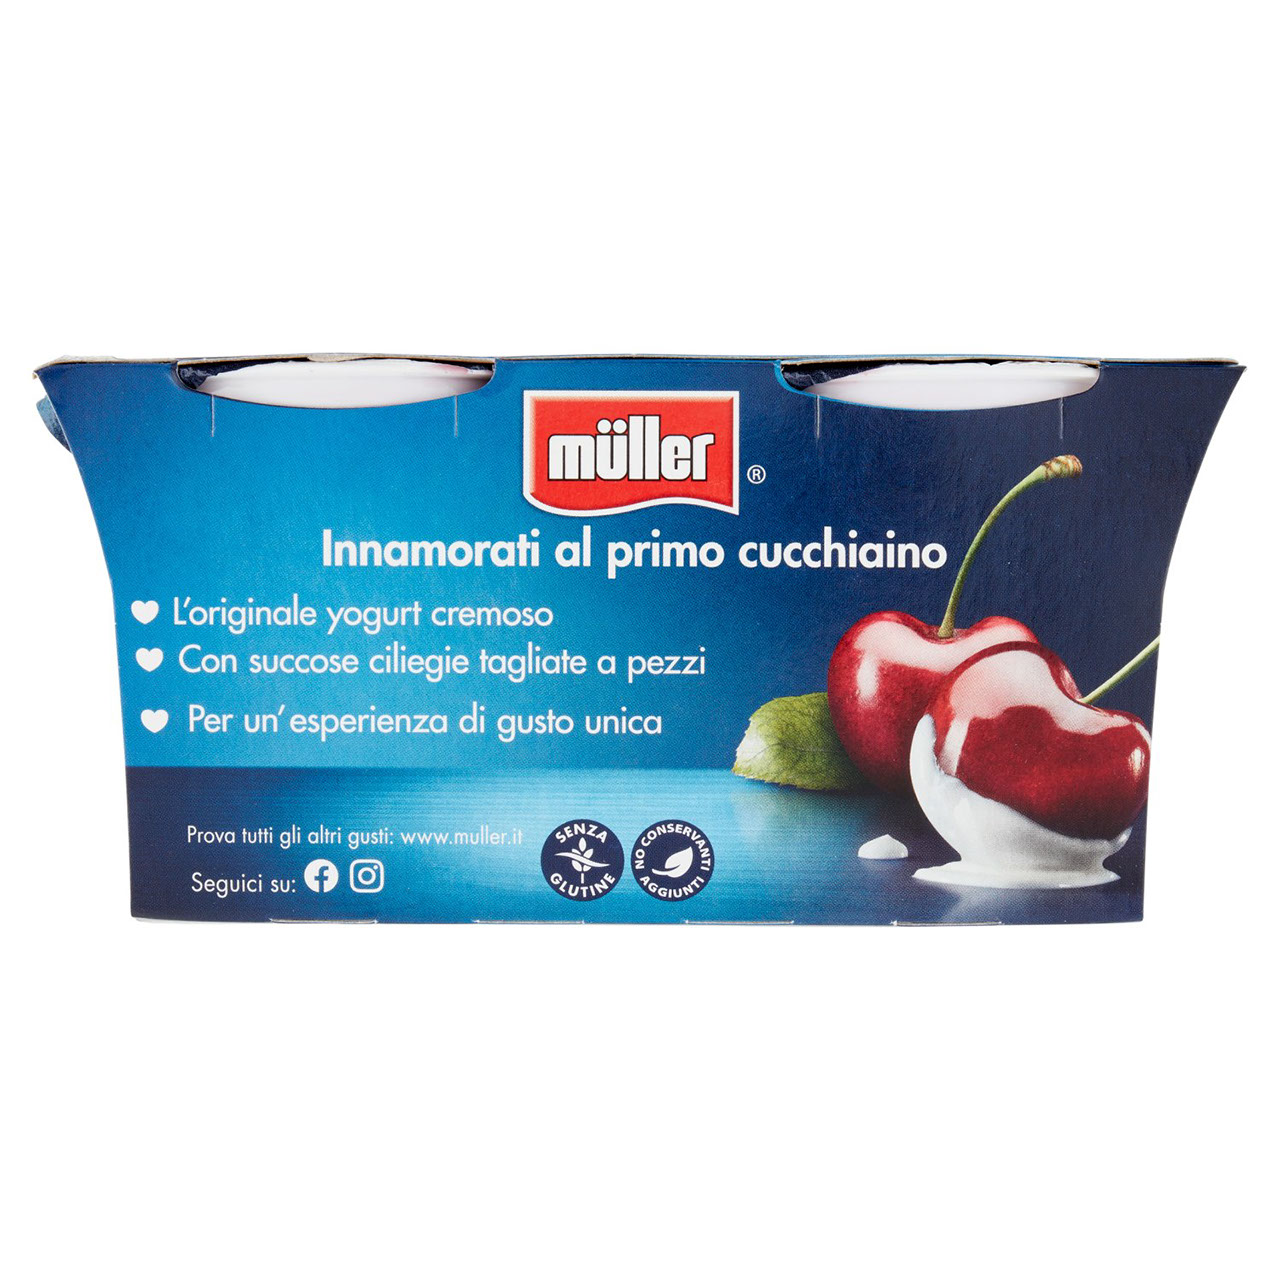 Müller Yogurt Cremoso Ciliegia a Pezzi 2x125g